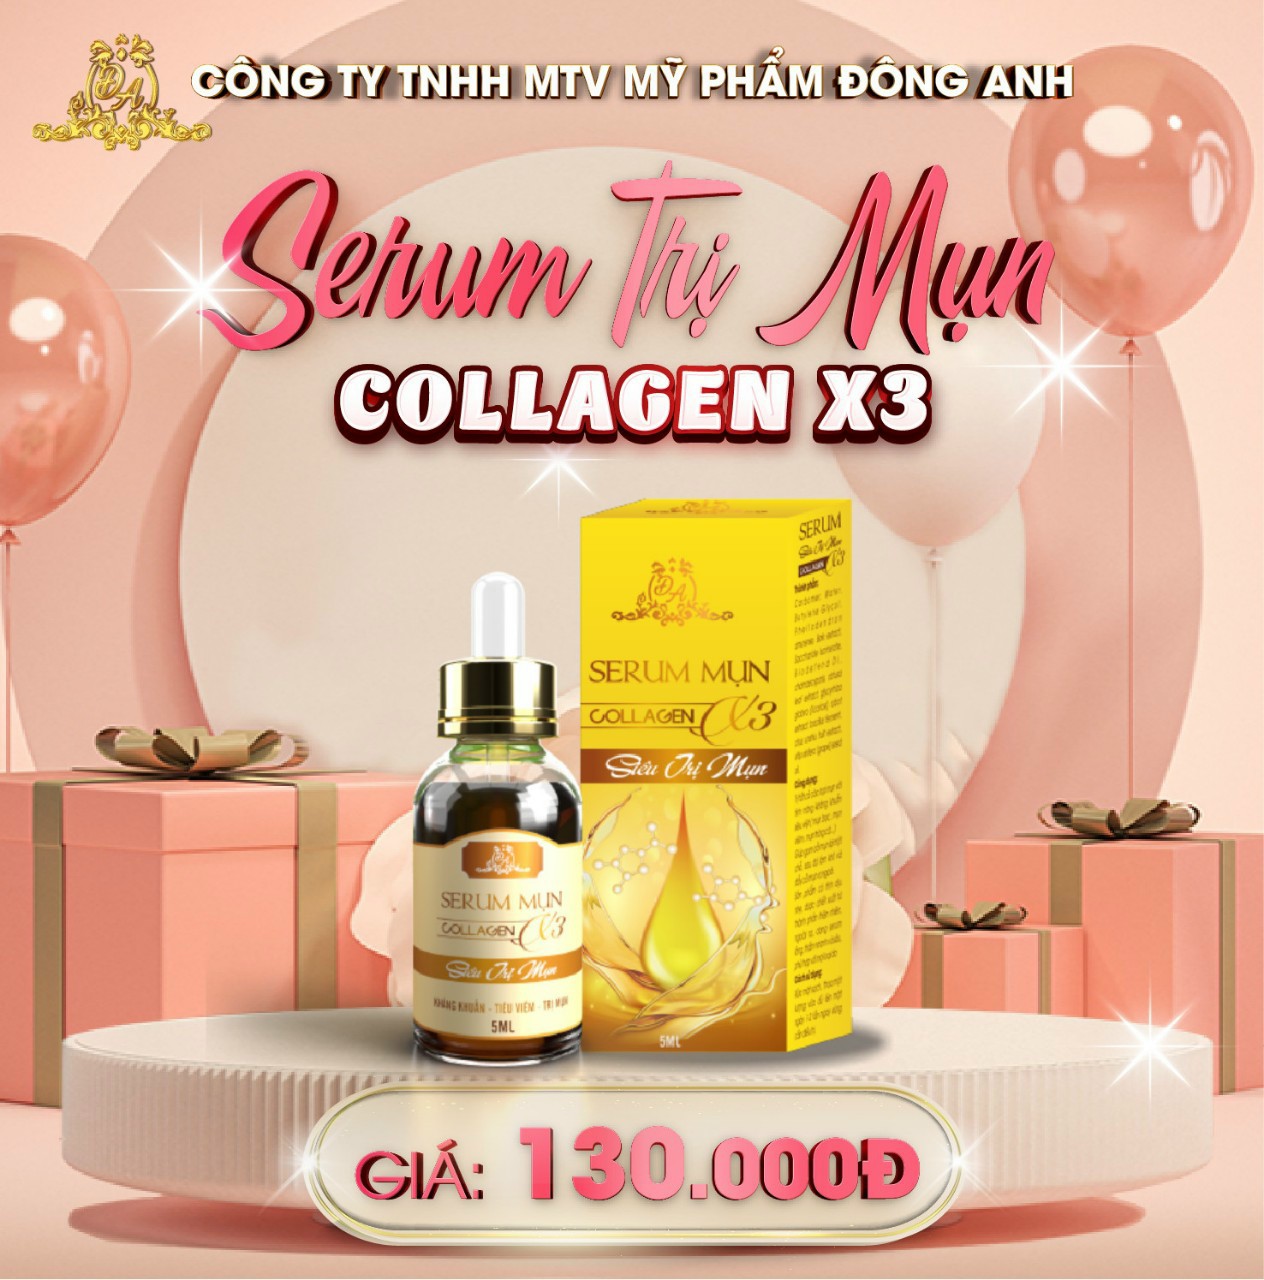 Serum Mụn Collagen X3 Serum Dưỡng Ẩm Kiểm Soát Dầu Nhờn Se Khít Lỗ Chân Lông Đông Anh Chính Hãng 5ml